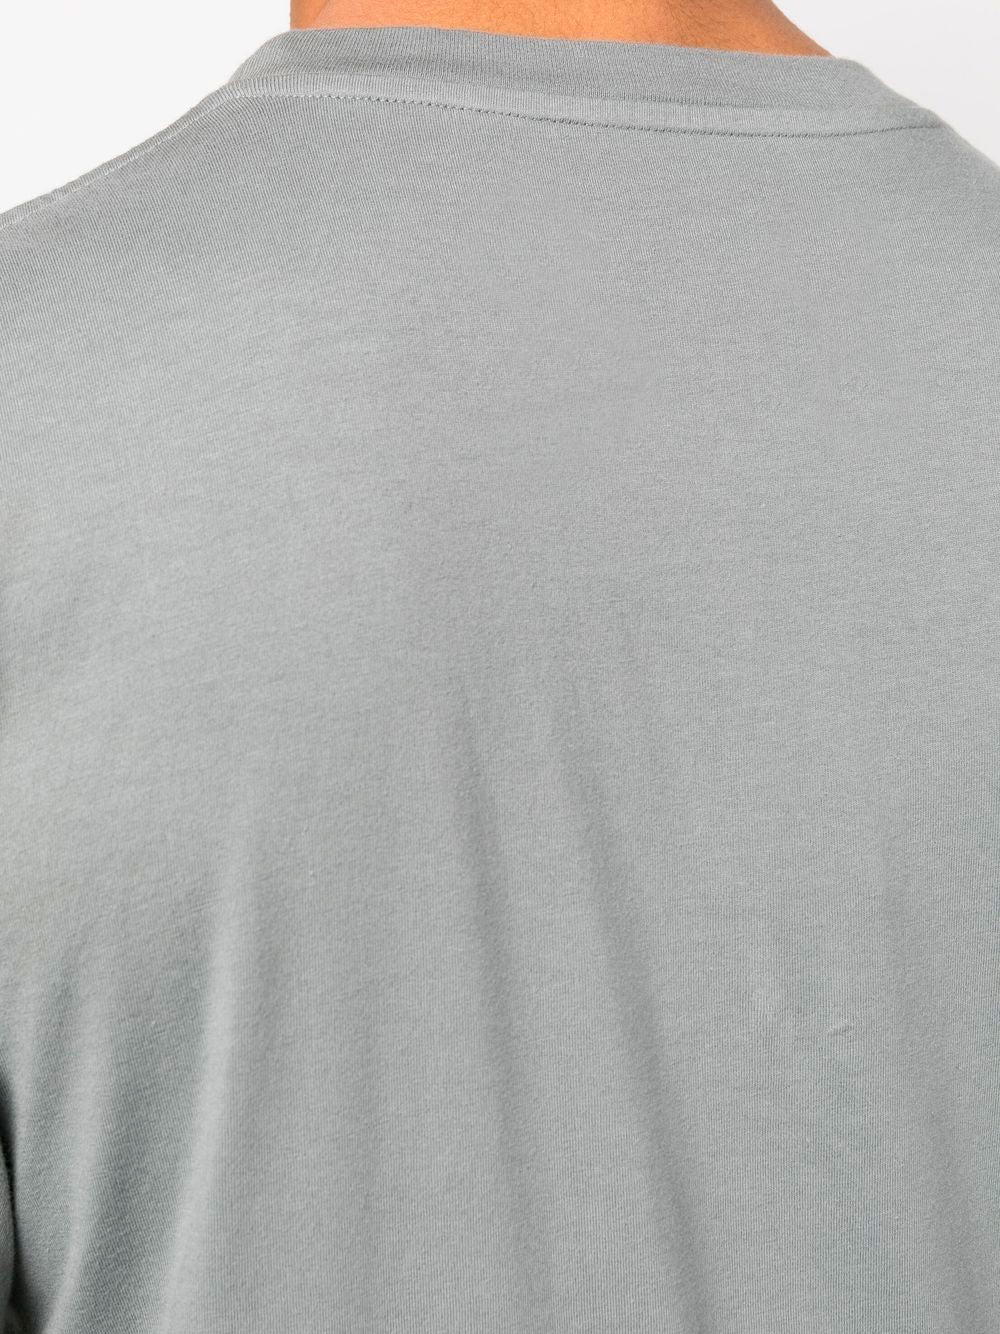 Camiseta de algodón de cuatro costuras